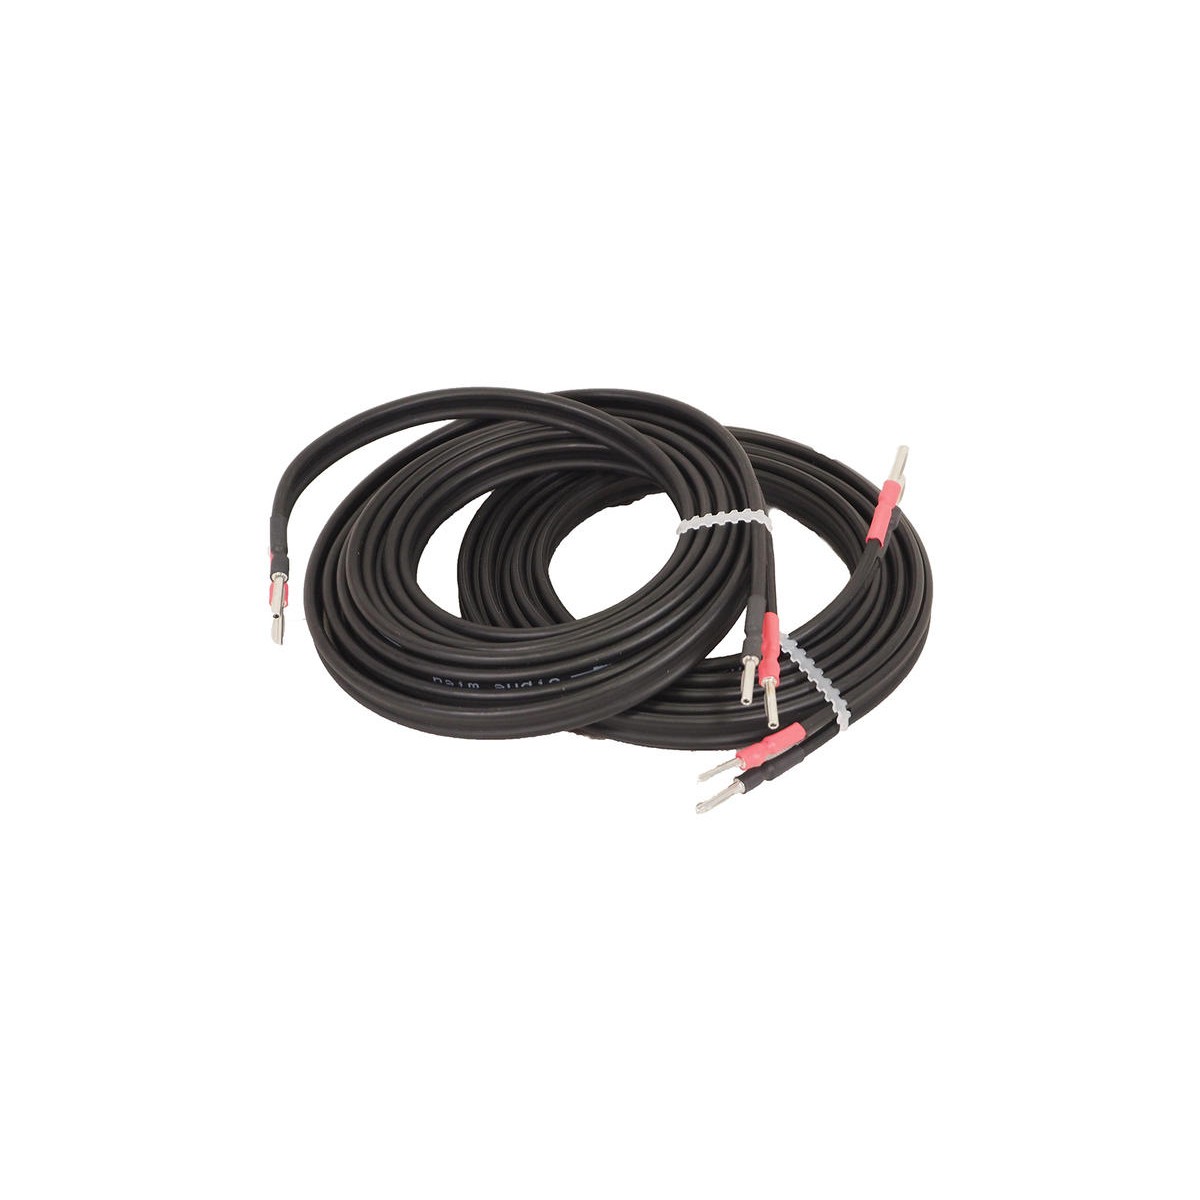 Kabel NAC A5 2 x 4m